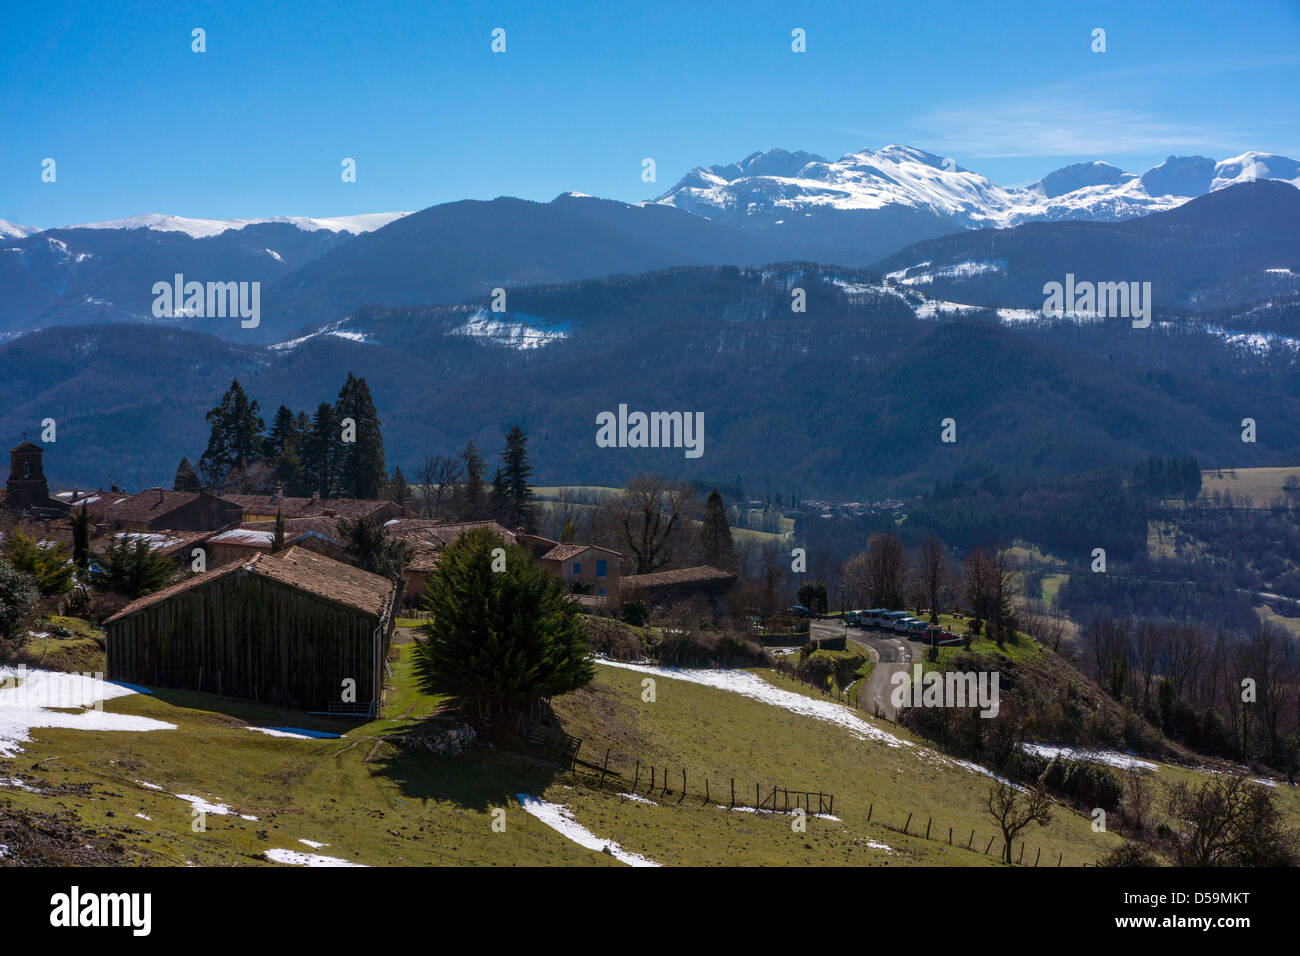 Vue vers les Pyrénées enneigés au-dessus de forêts sombres, avec petit village, ciel bleu Banque D'Images